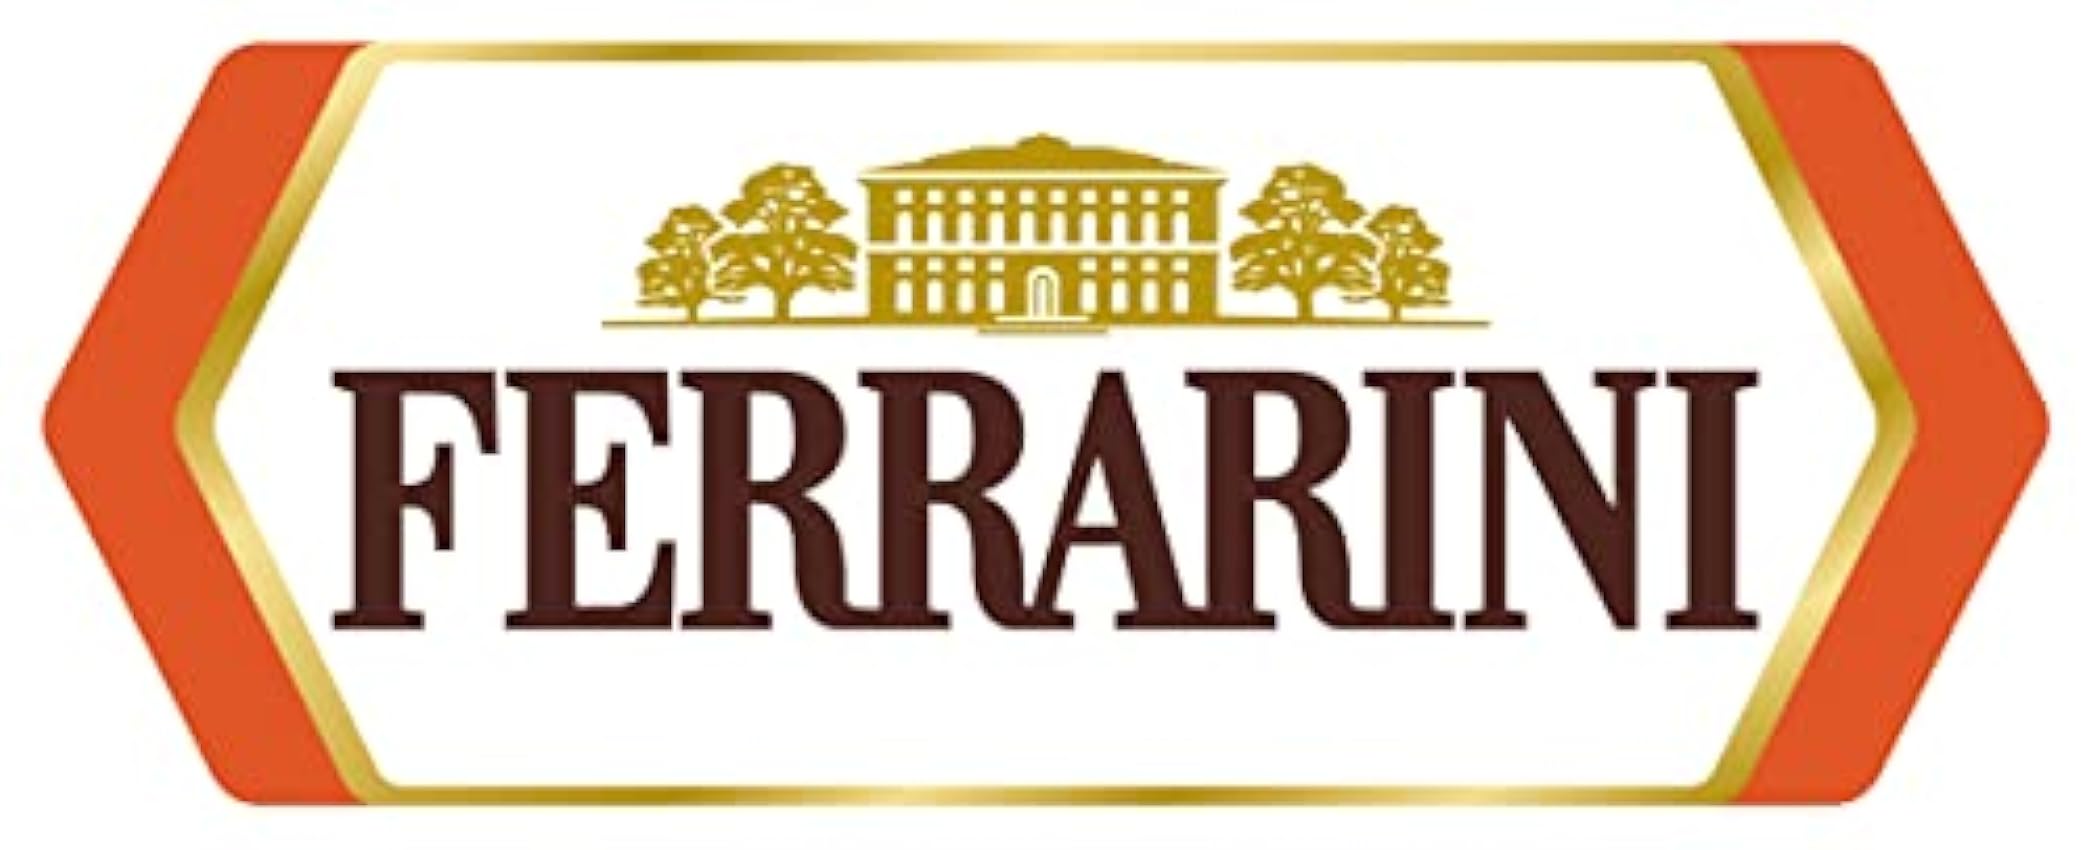 Ferrarini Condimento Vinaegro, Condimento Antiguo Elaborado con Mosto de Uva Cocido y Acetificado Envejecido en Barricas de Roble, 250ml odq2Hjla